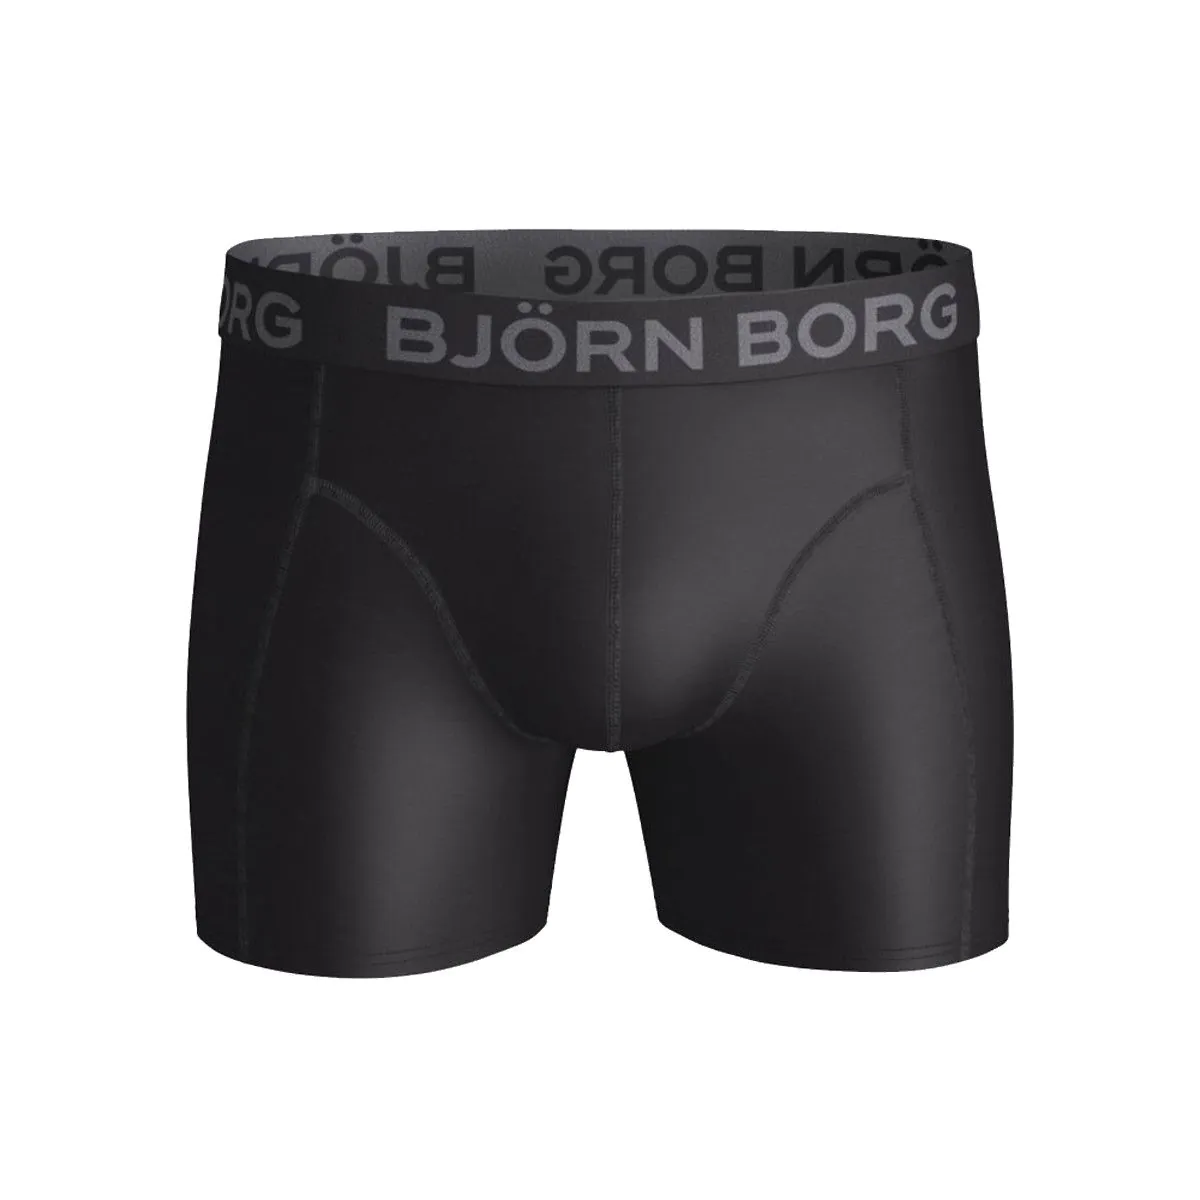 Tussendoortje Blazen Openbaren Bjorn Borg Solid Microfiber Men's Shorts Boxer 9999-1016-900